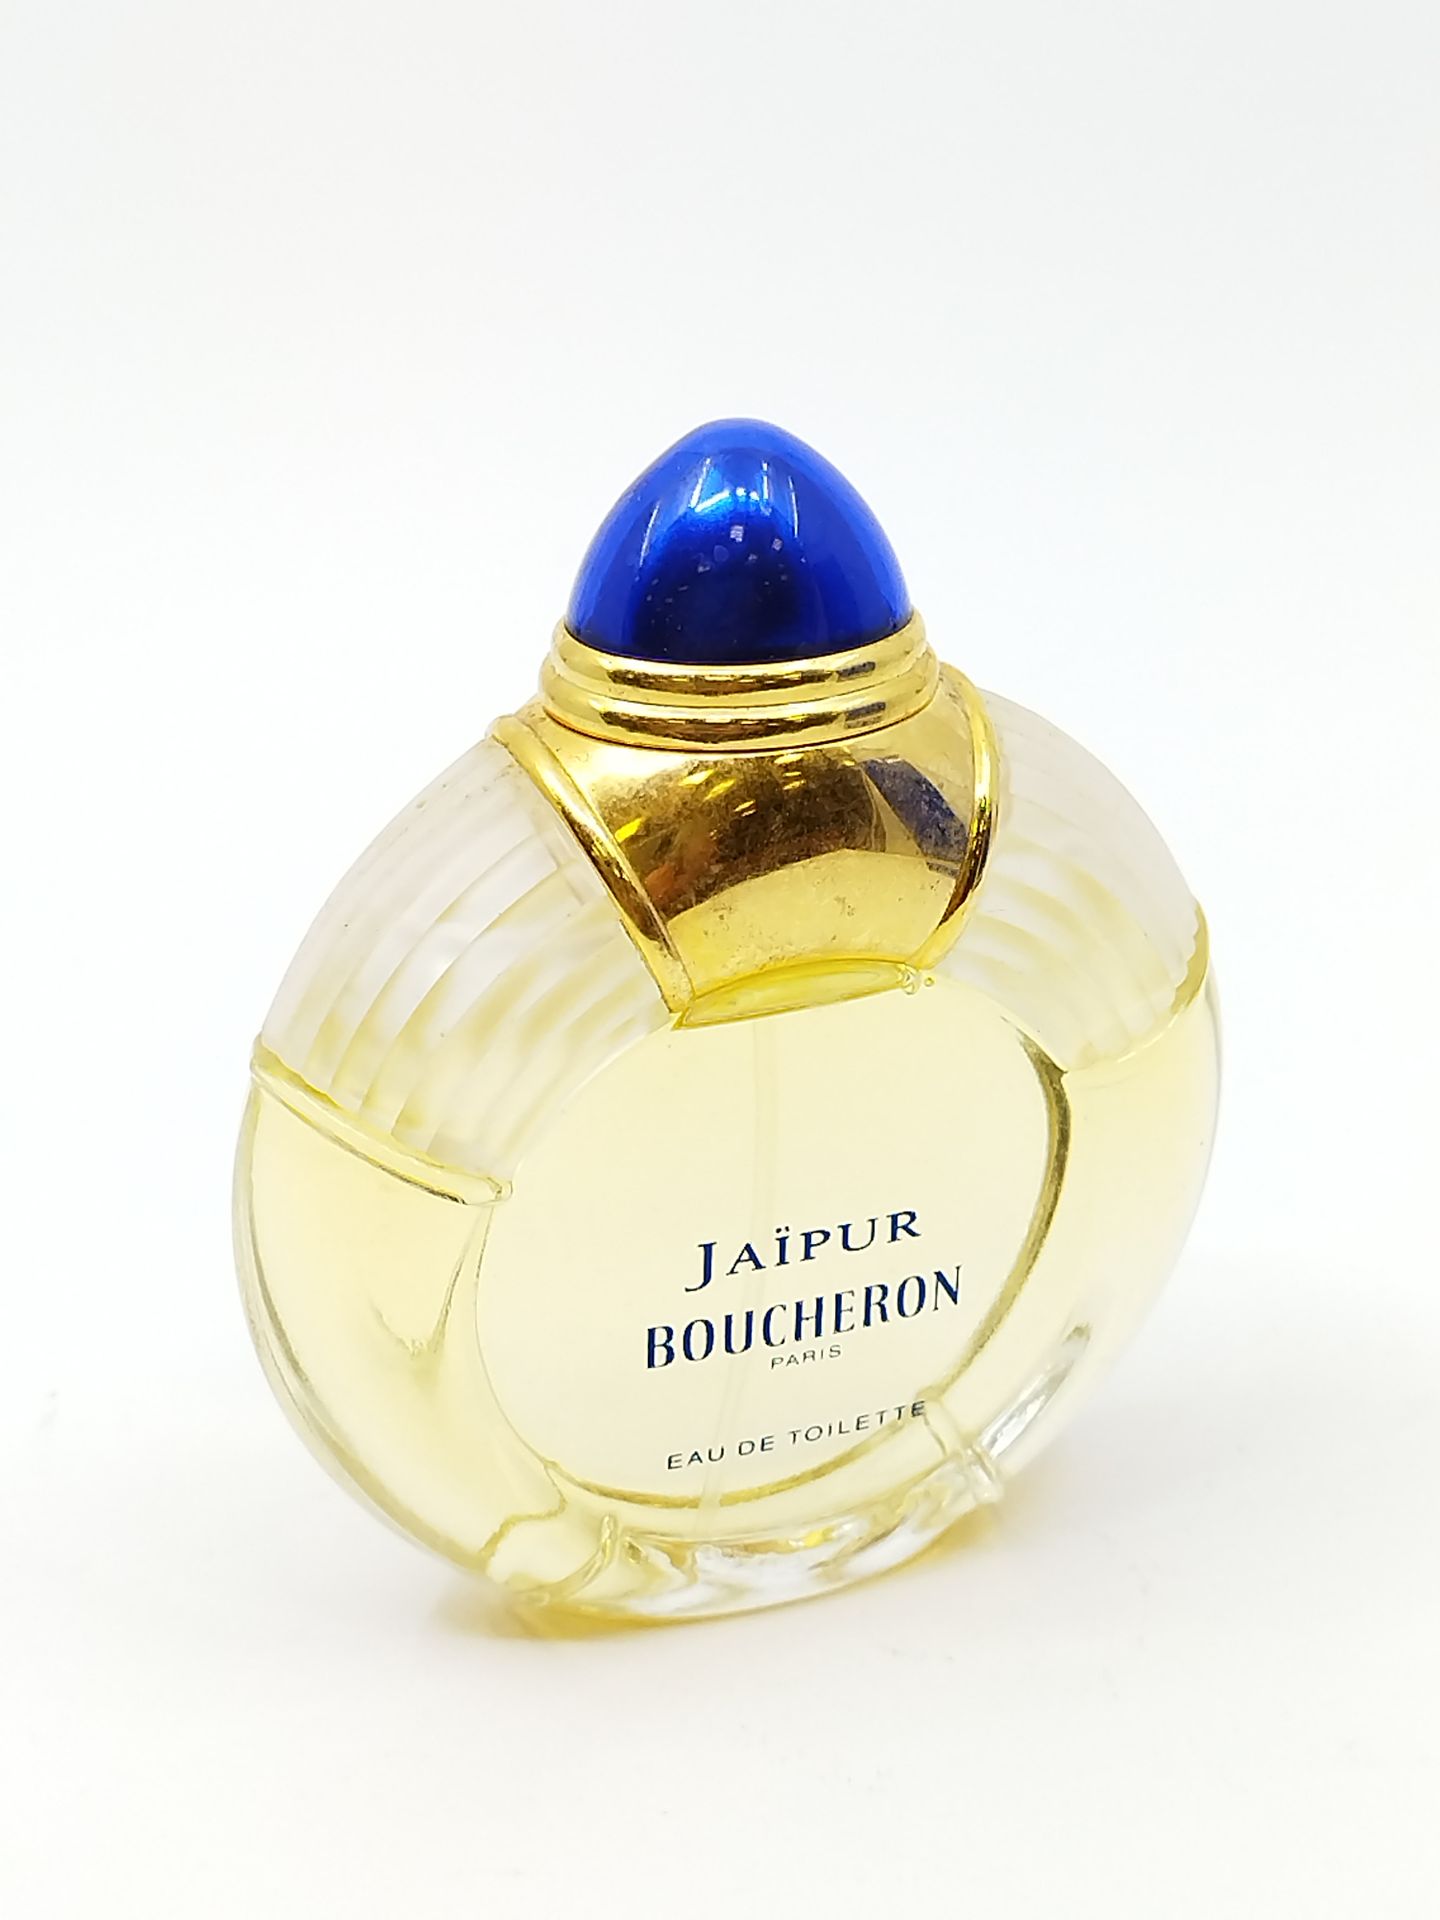 Null BOUCHERON PARIS JAIPUR

两个无色玻璃和锌合金制成的珠宝香水瓶

其中一个代表一个环，在它的情况下